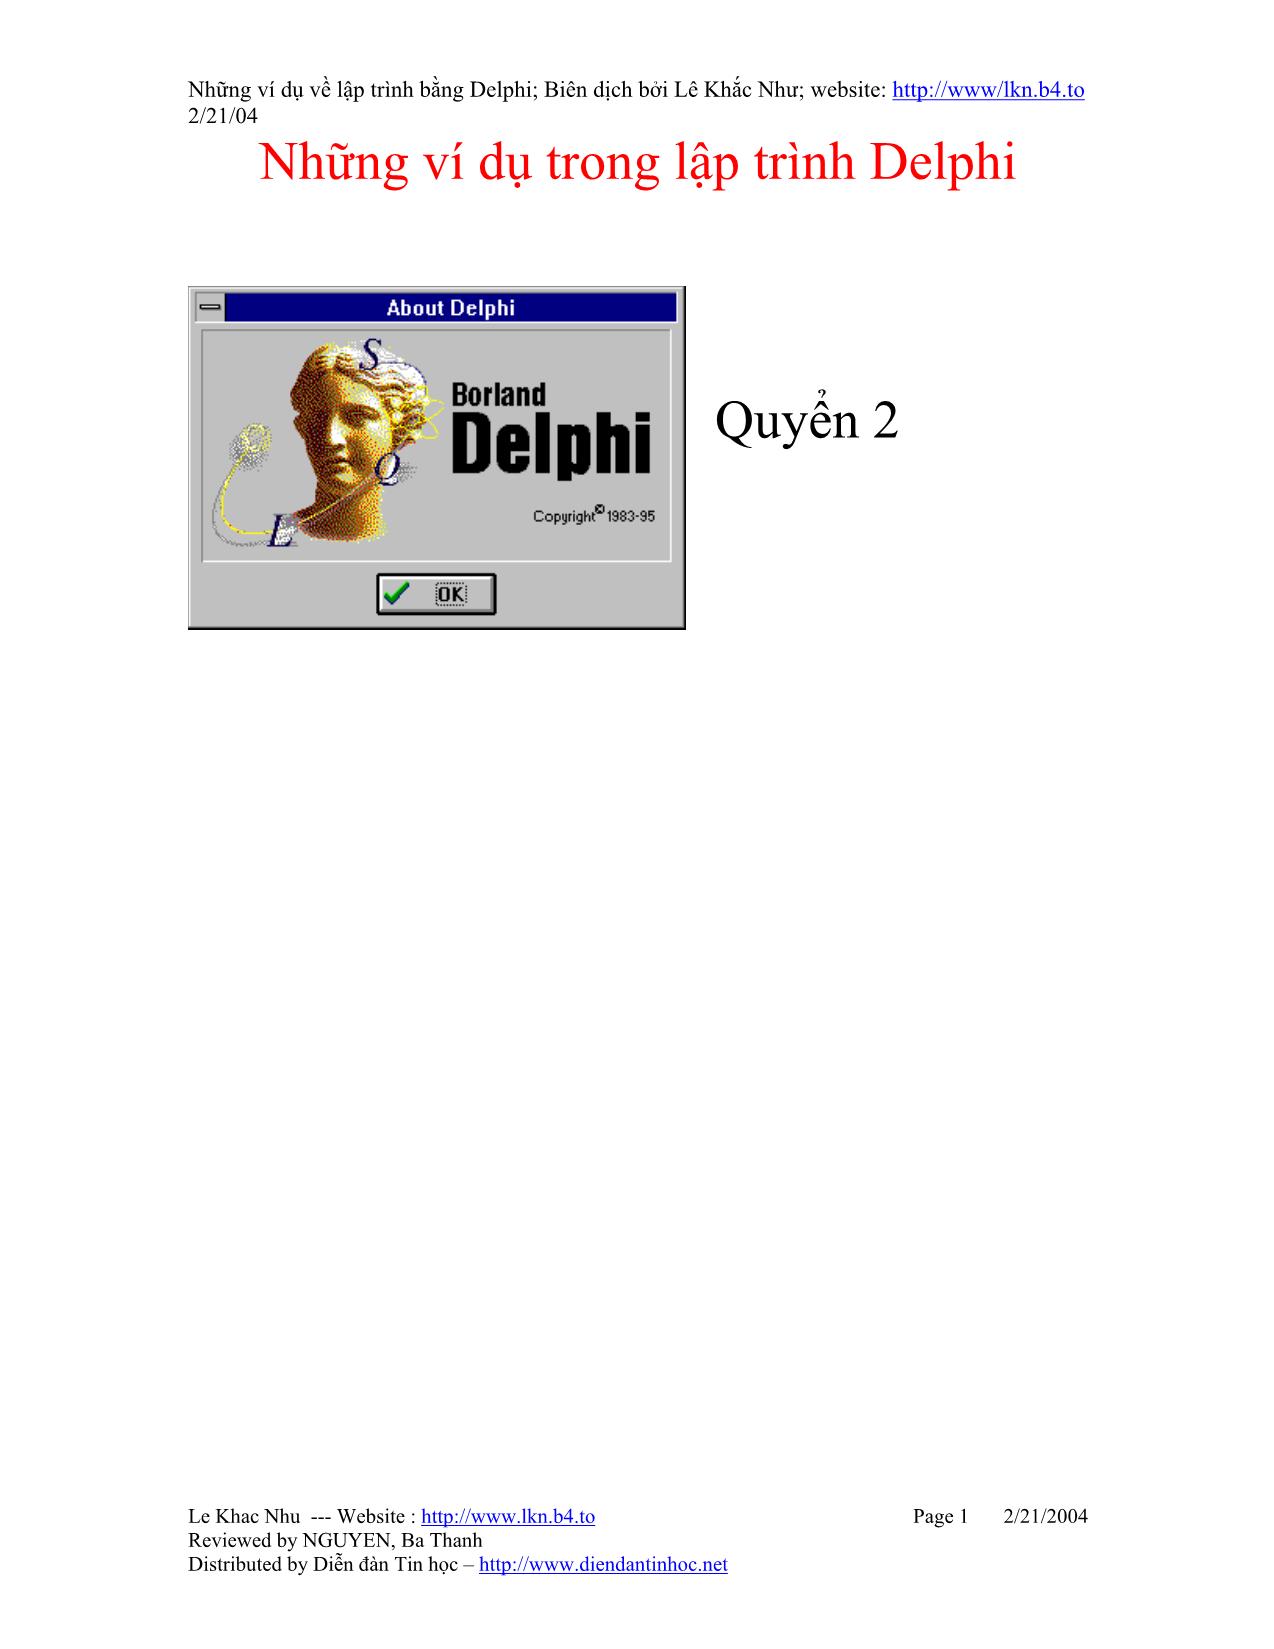 Những ví dụ trong lập trình Delphi trang 1